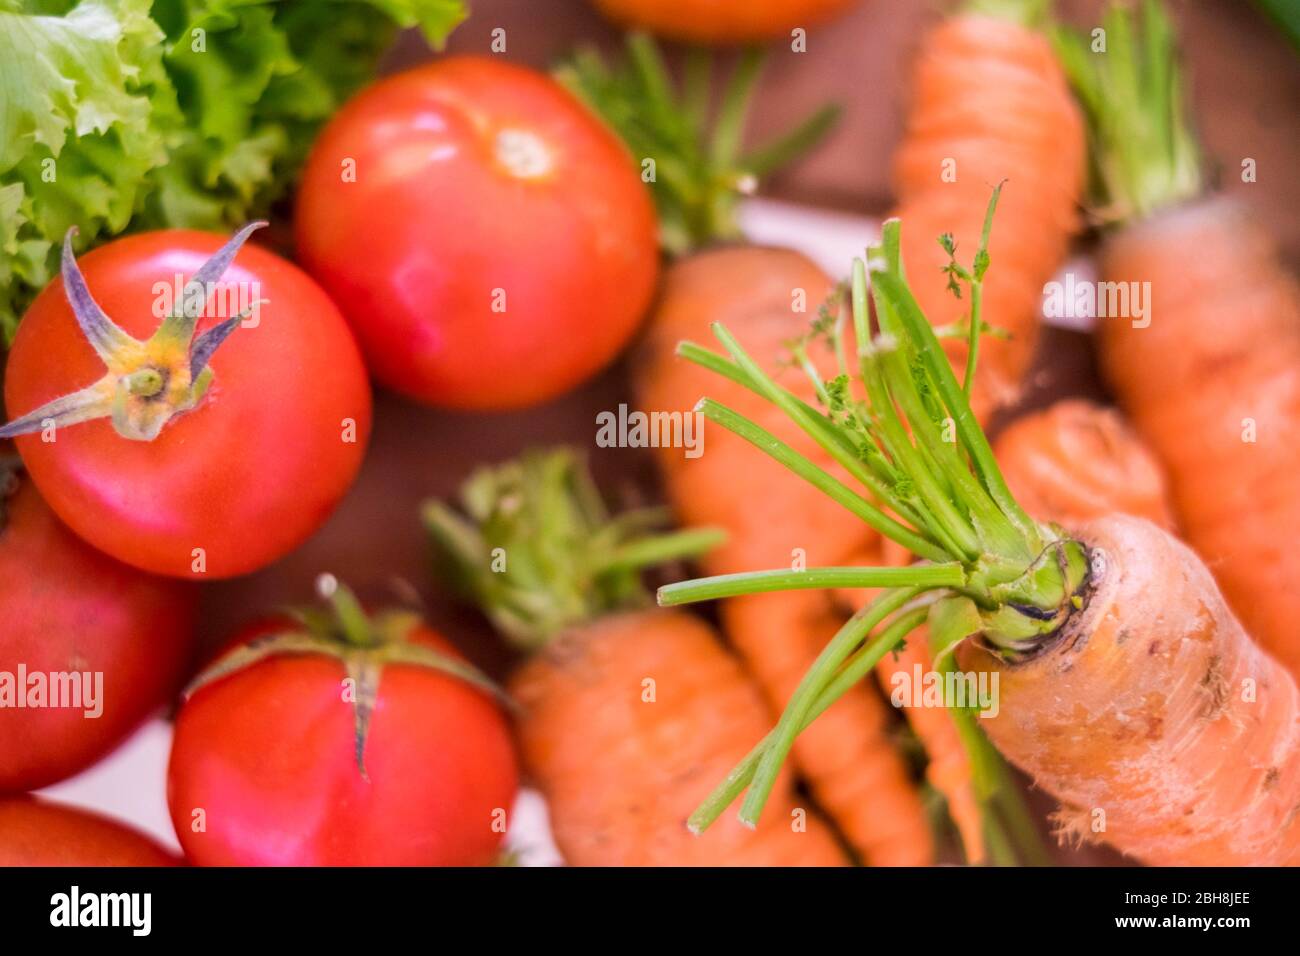 Preparati a verdure miste a colori come carote, pomodori e insalate con tanti colori e un concetto di stile di vita sano per la dieta e il benessere. Cibo fresco per una vita piacevole. Concetto vegetariano e vegano Foto Stock